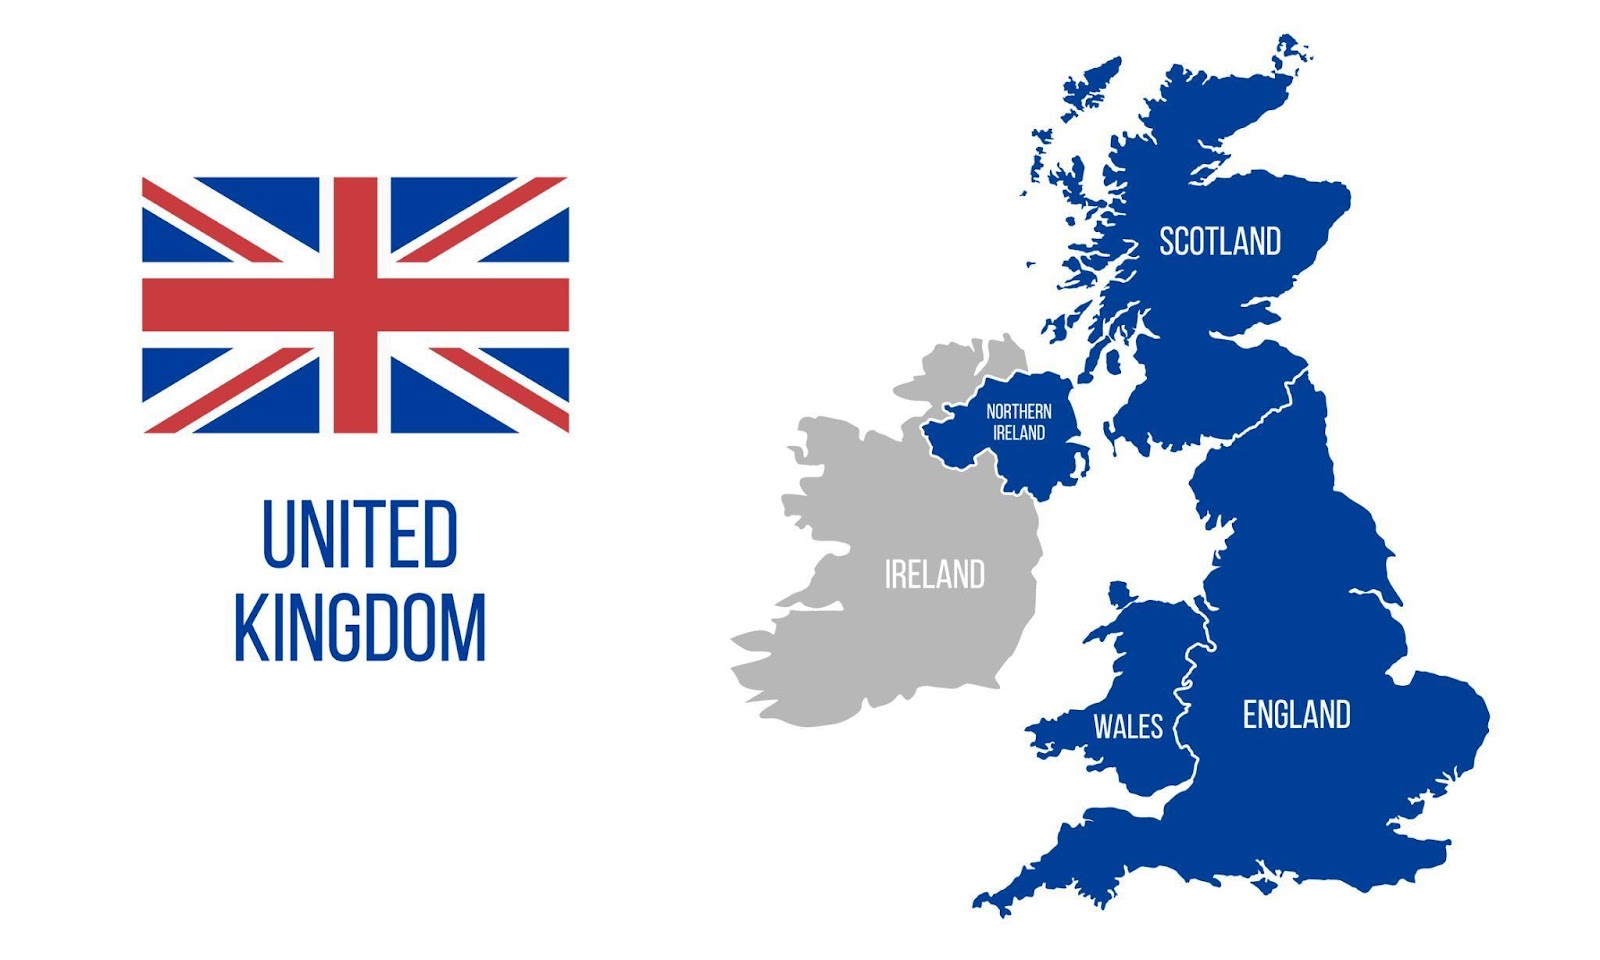 A noter que le Royaume-Uni (UK) et la Grande-Bretagne, bien que très similaires, ne sont pas synonymes dans ce contexte législatif